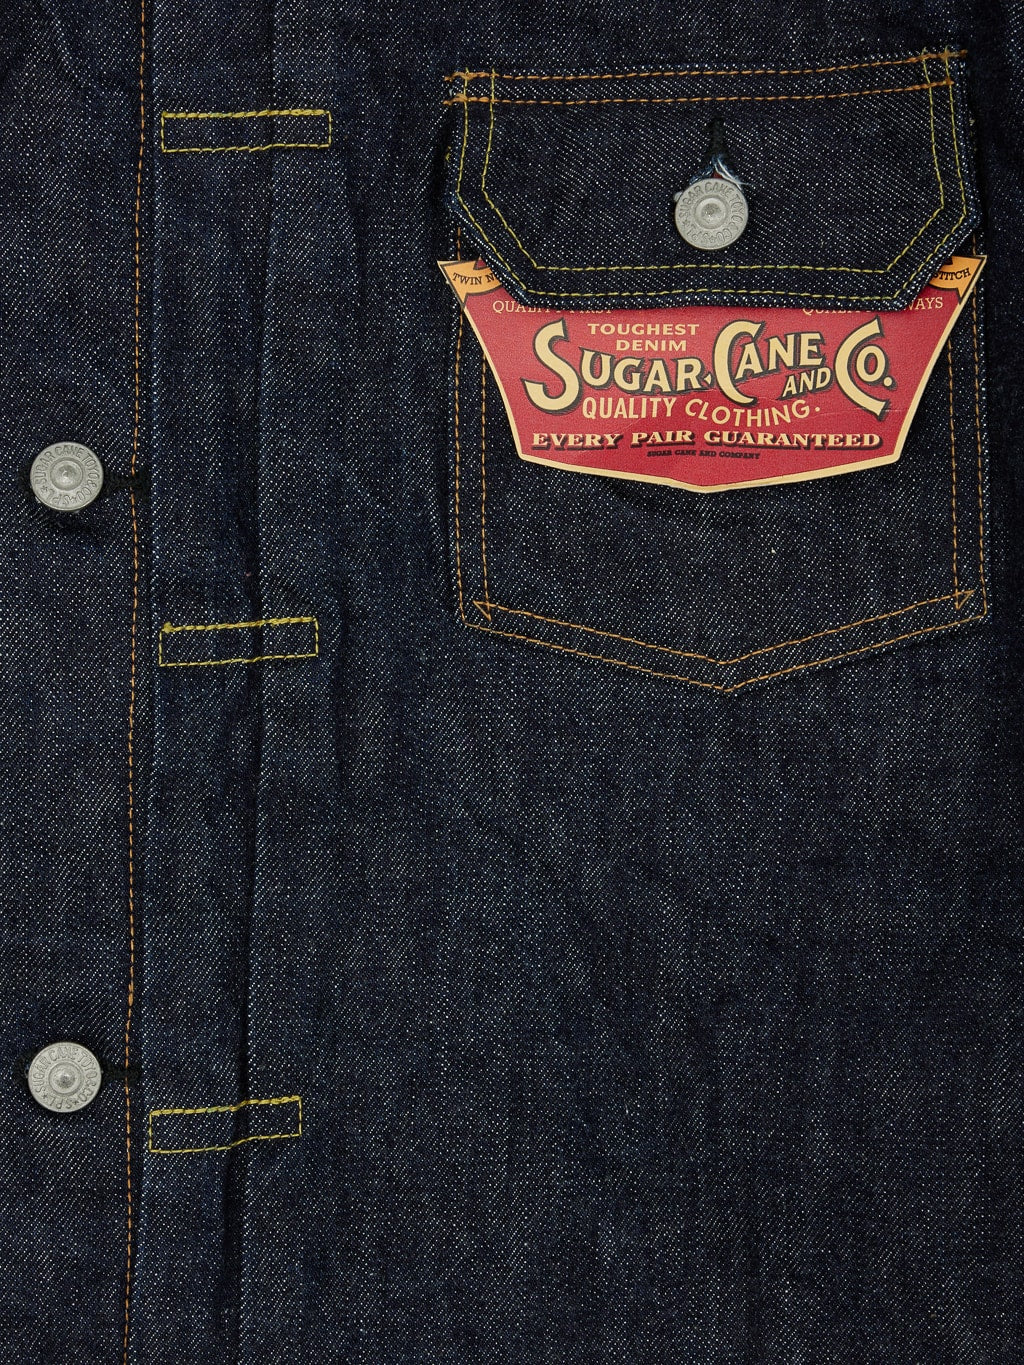 Sugar Cane 1953 Type II Denim blanket lined Jacket pocket details